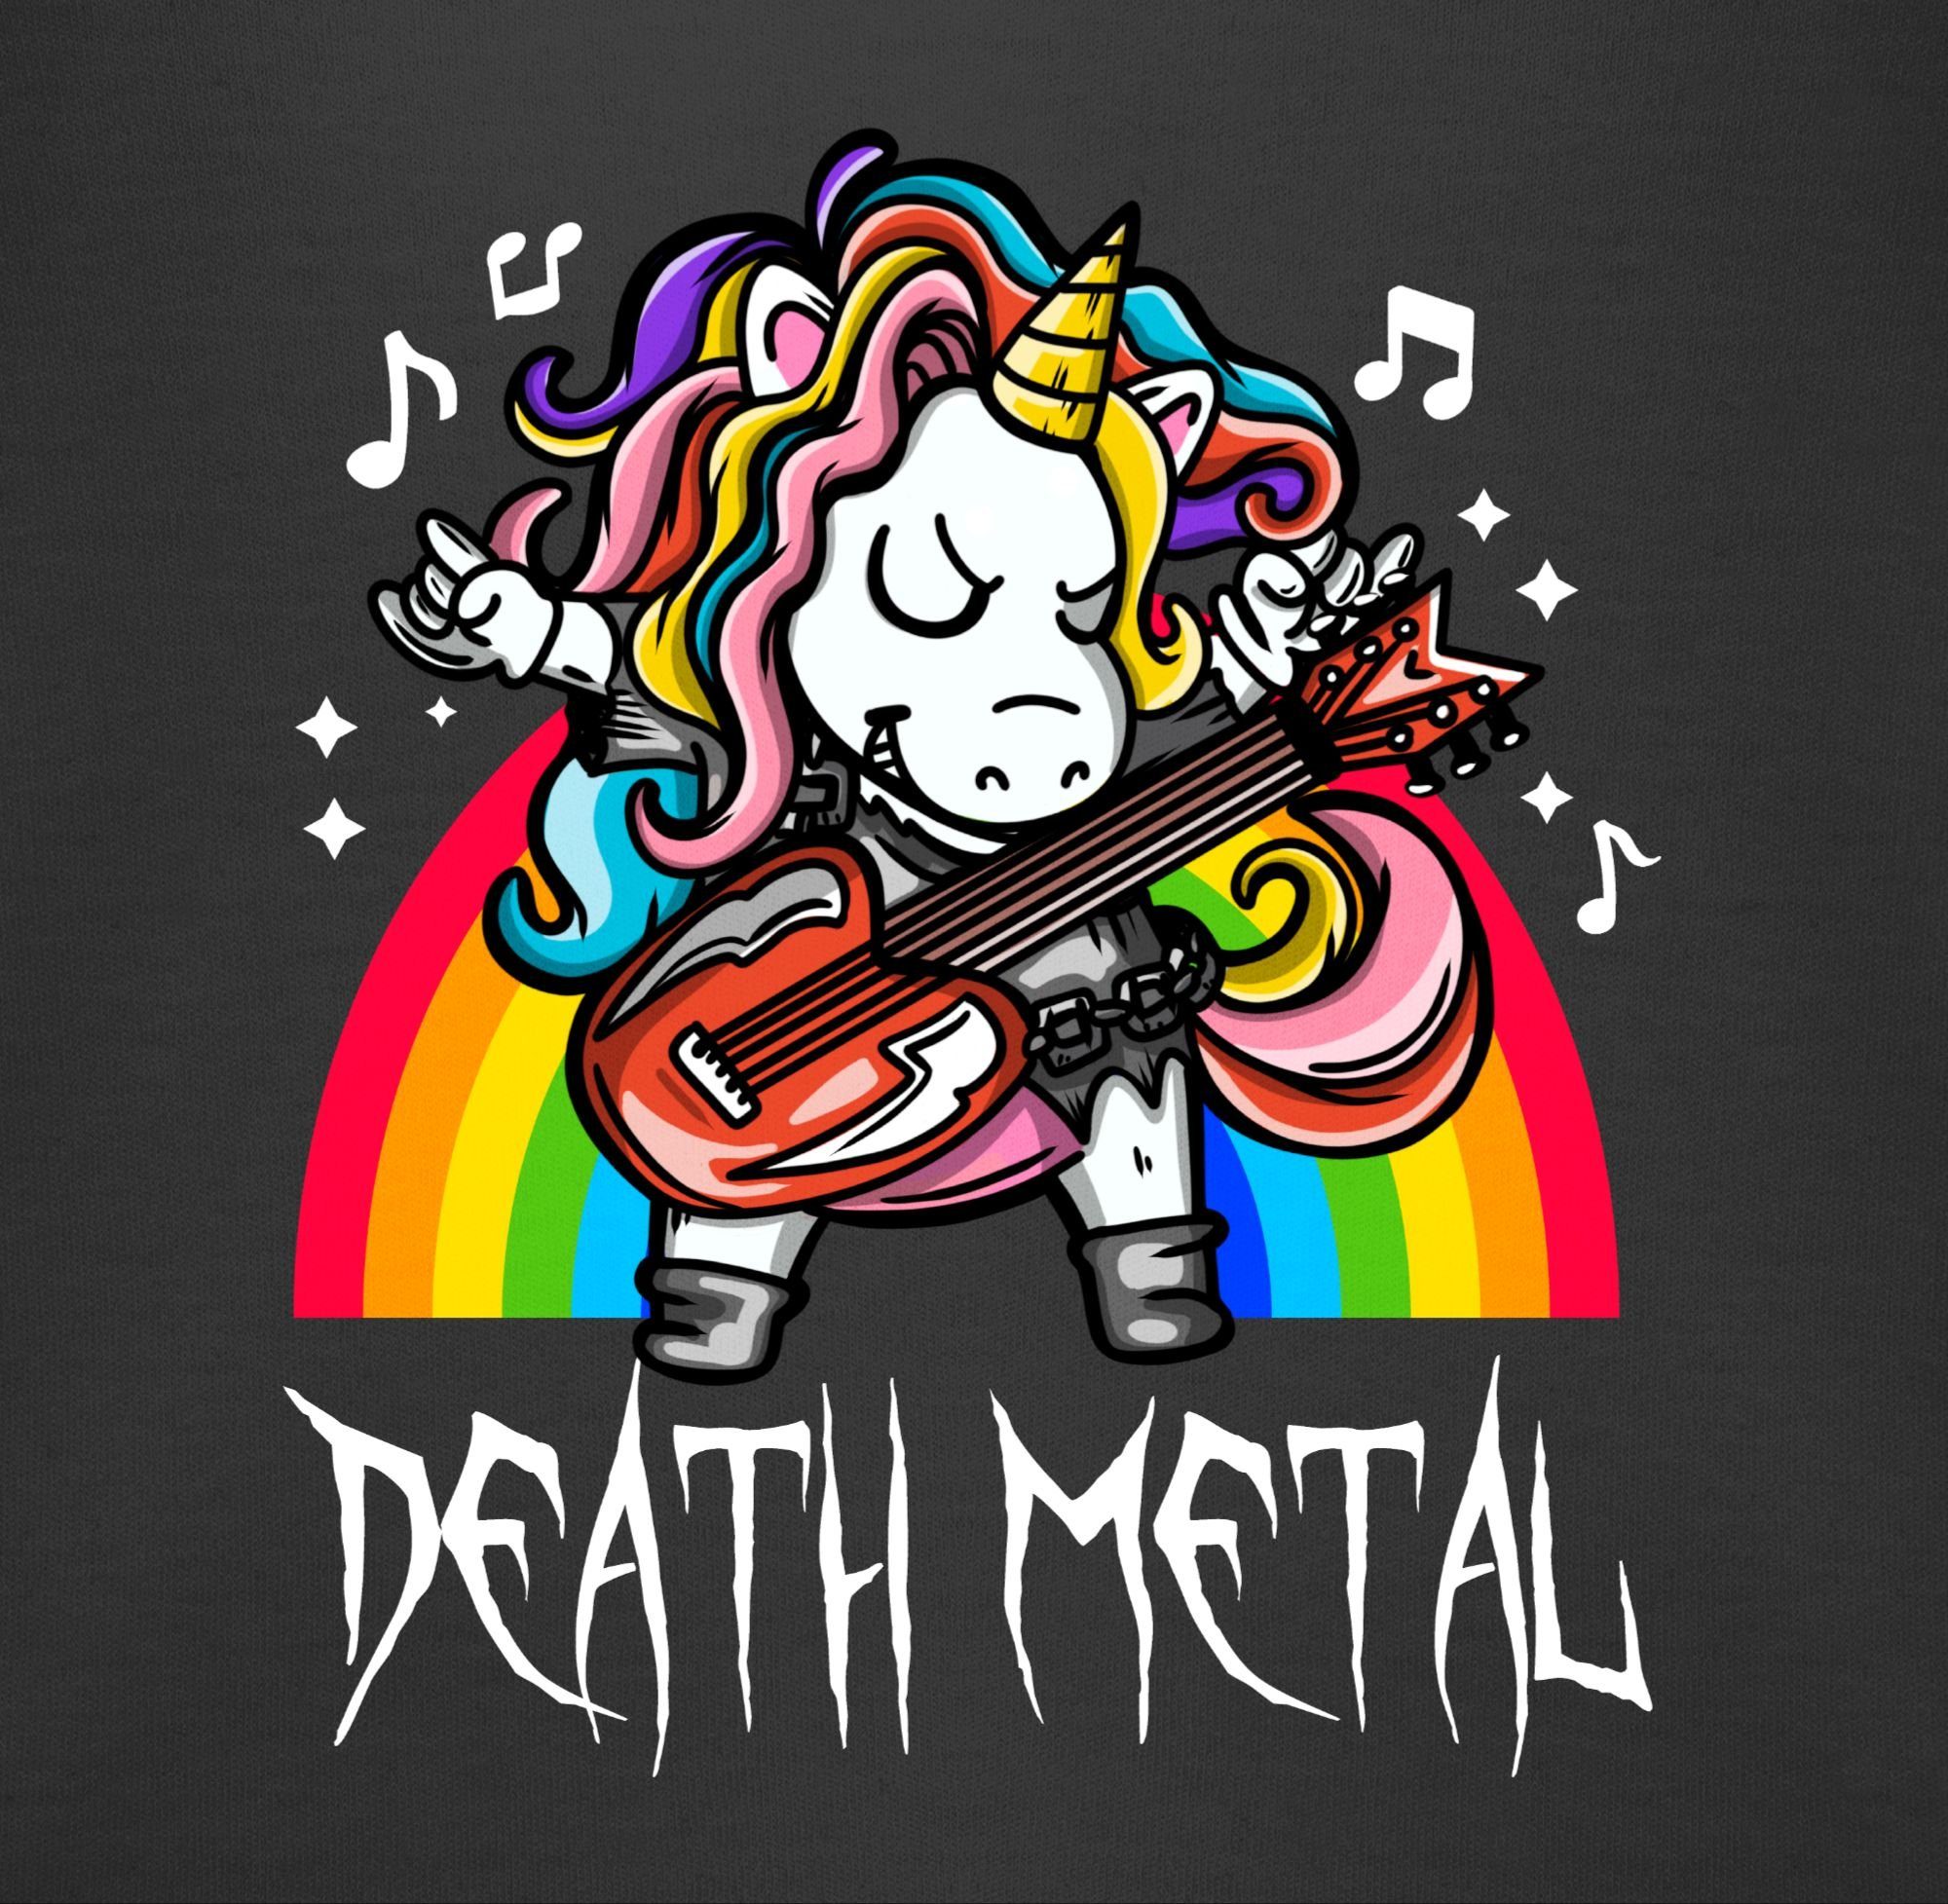 Sprüche Einhorn Metal Shirtracer Death Shirtbody 1 Baby Schwarz